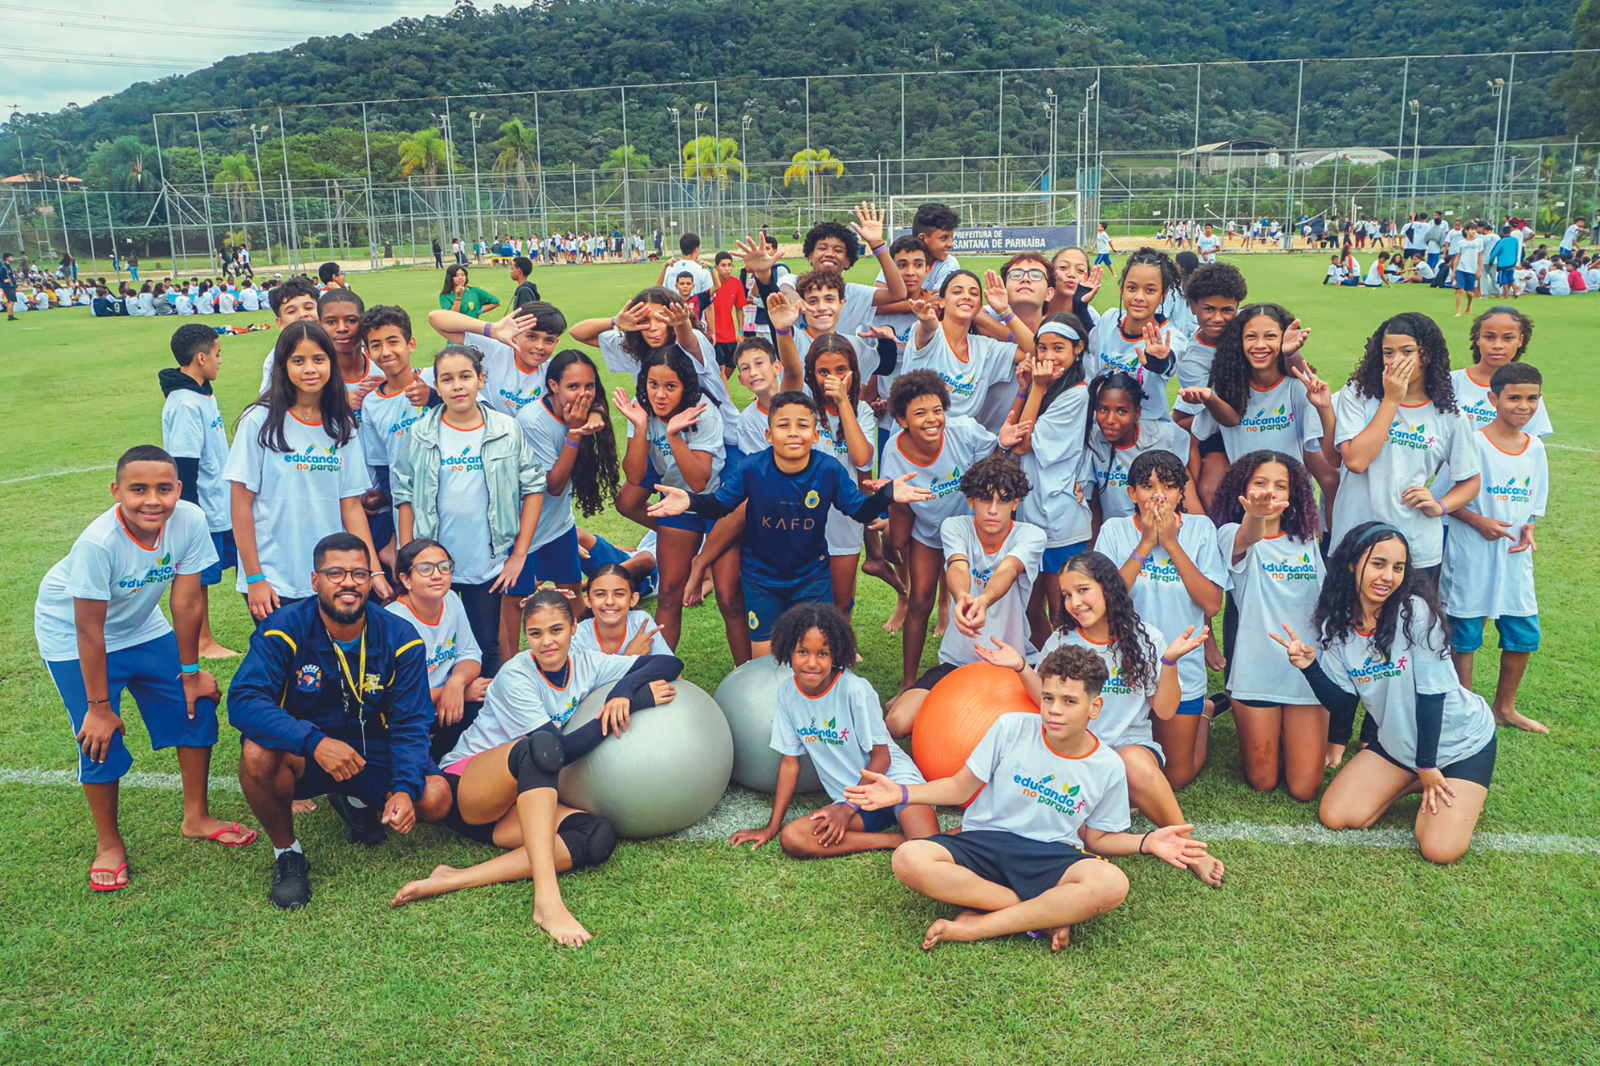 Educando no Parque: cerca de 700 estudantes de Santana de Parnaíba participam de atividades esportivas